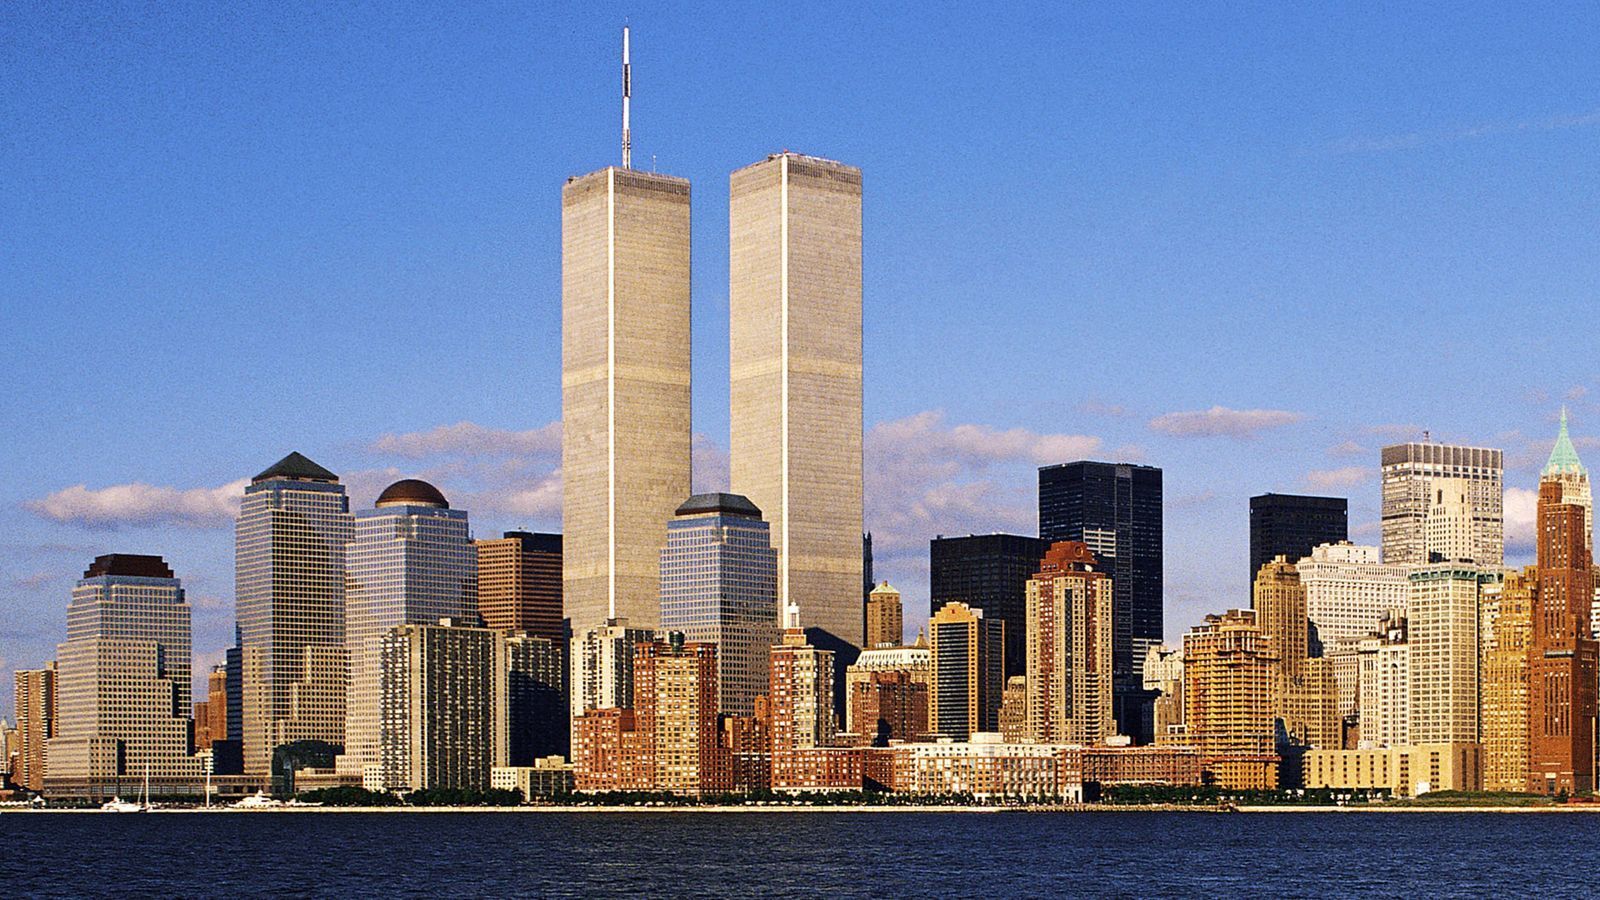 
                <strong>Die "Twin Towers" in New York stehen noch</strong><br>
                Damals standen auch noch die "Twin Towers" in New York. Ein Jahr später wurden zwei Flugzeuge wenige Minuten nacheinander absichtlich in die beiden Türme gesteuert - es war einer der größten Terroranschläge der Neuzeit, der die Weltlage gehörig veränderte.
              